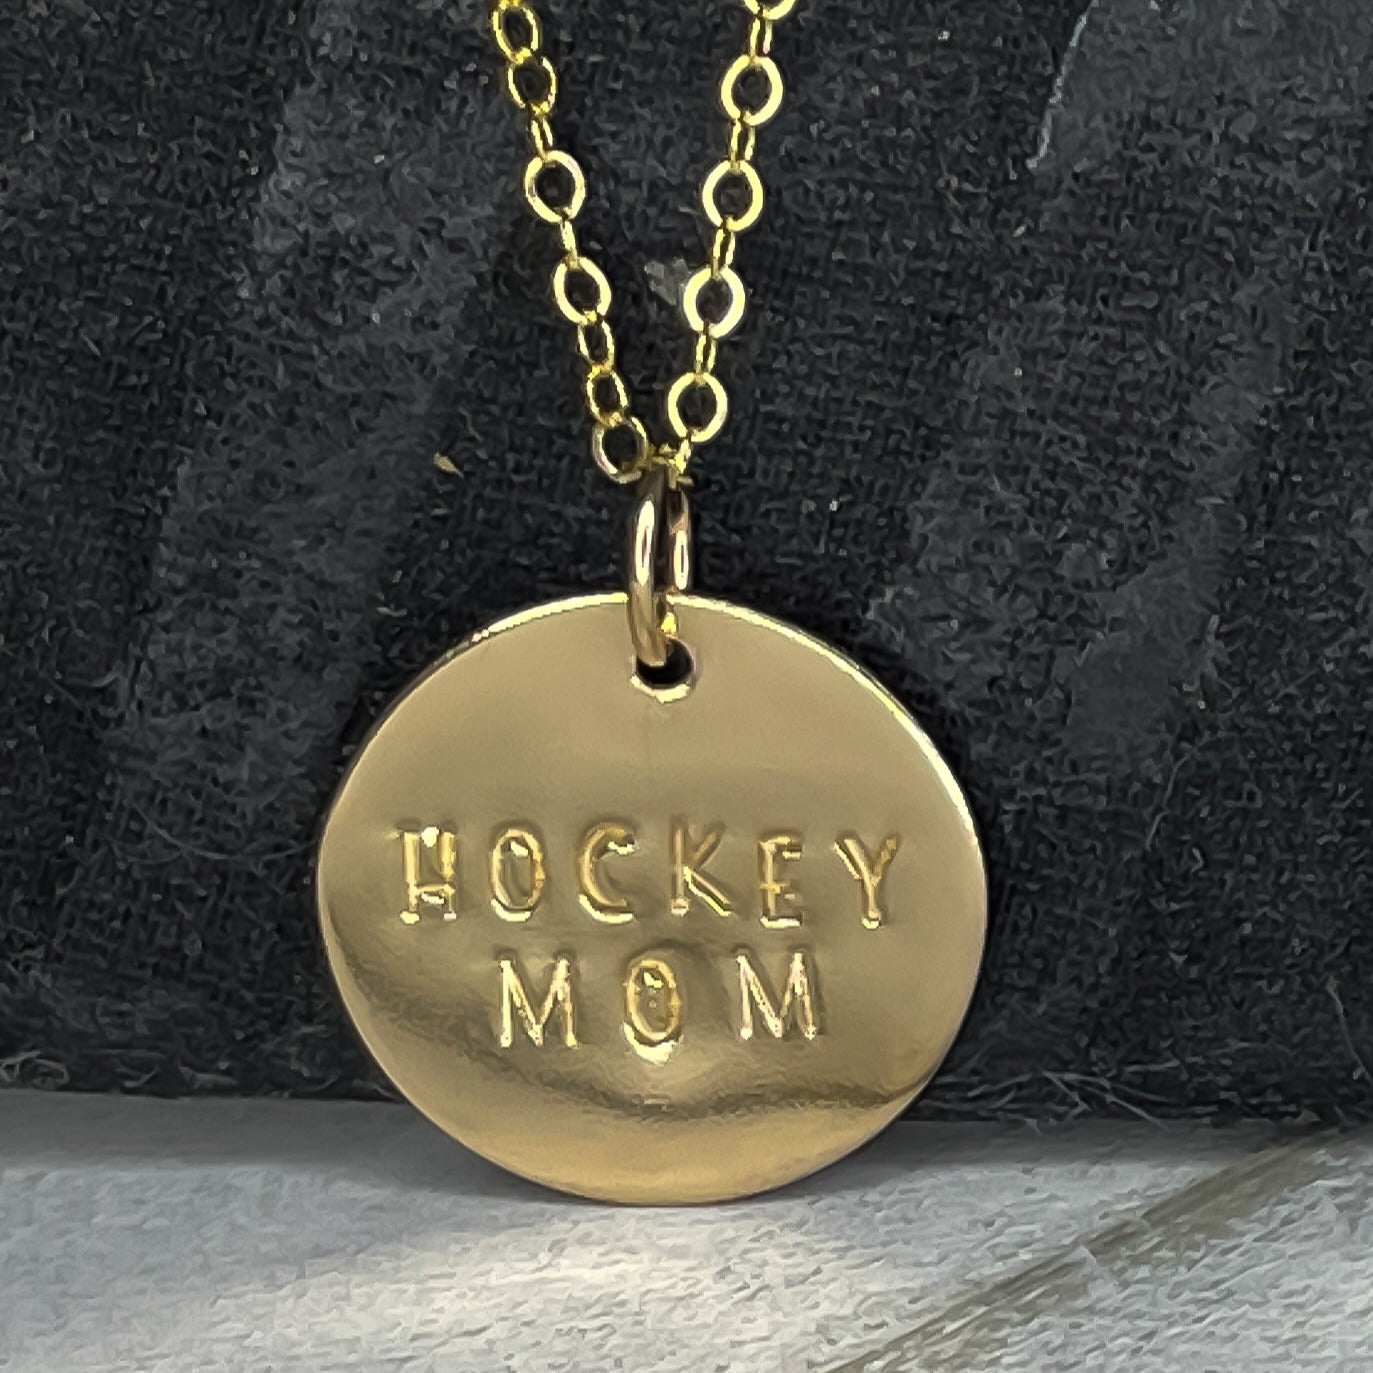 Hockey Mom necklace in 14k gold fill